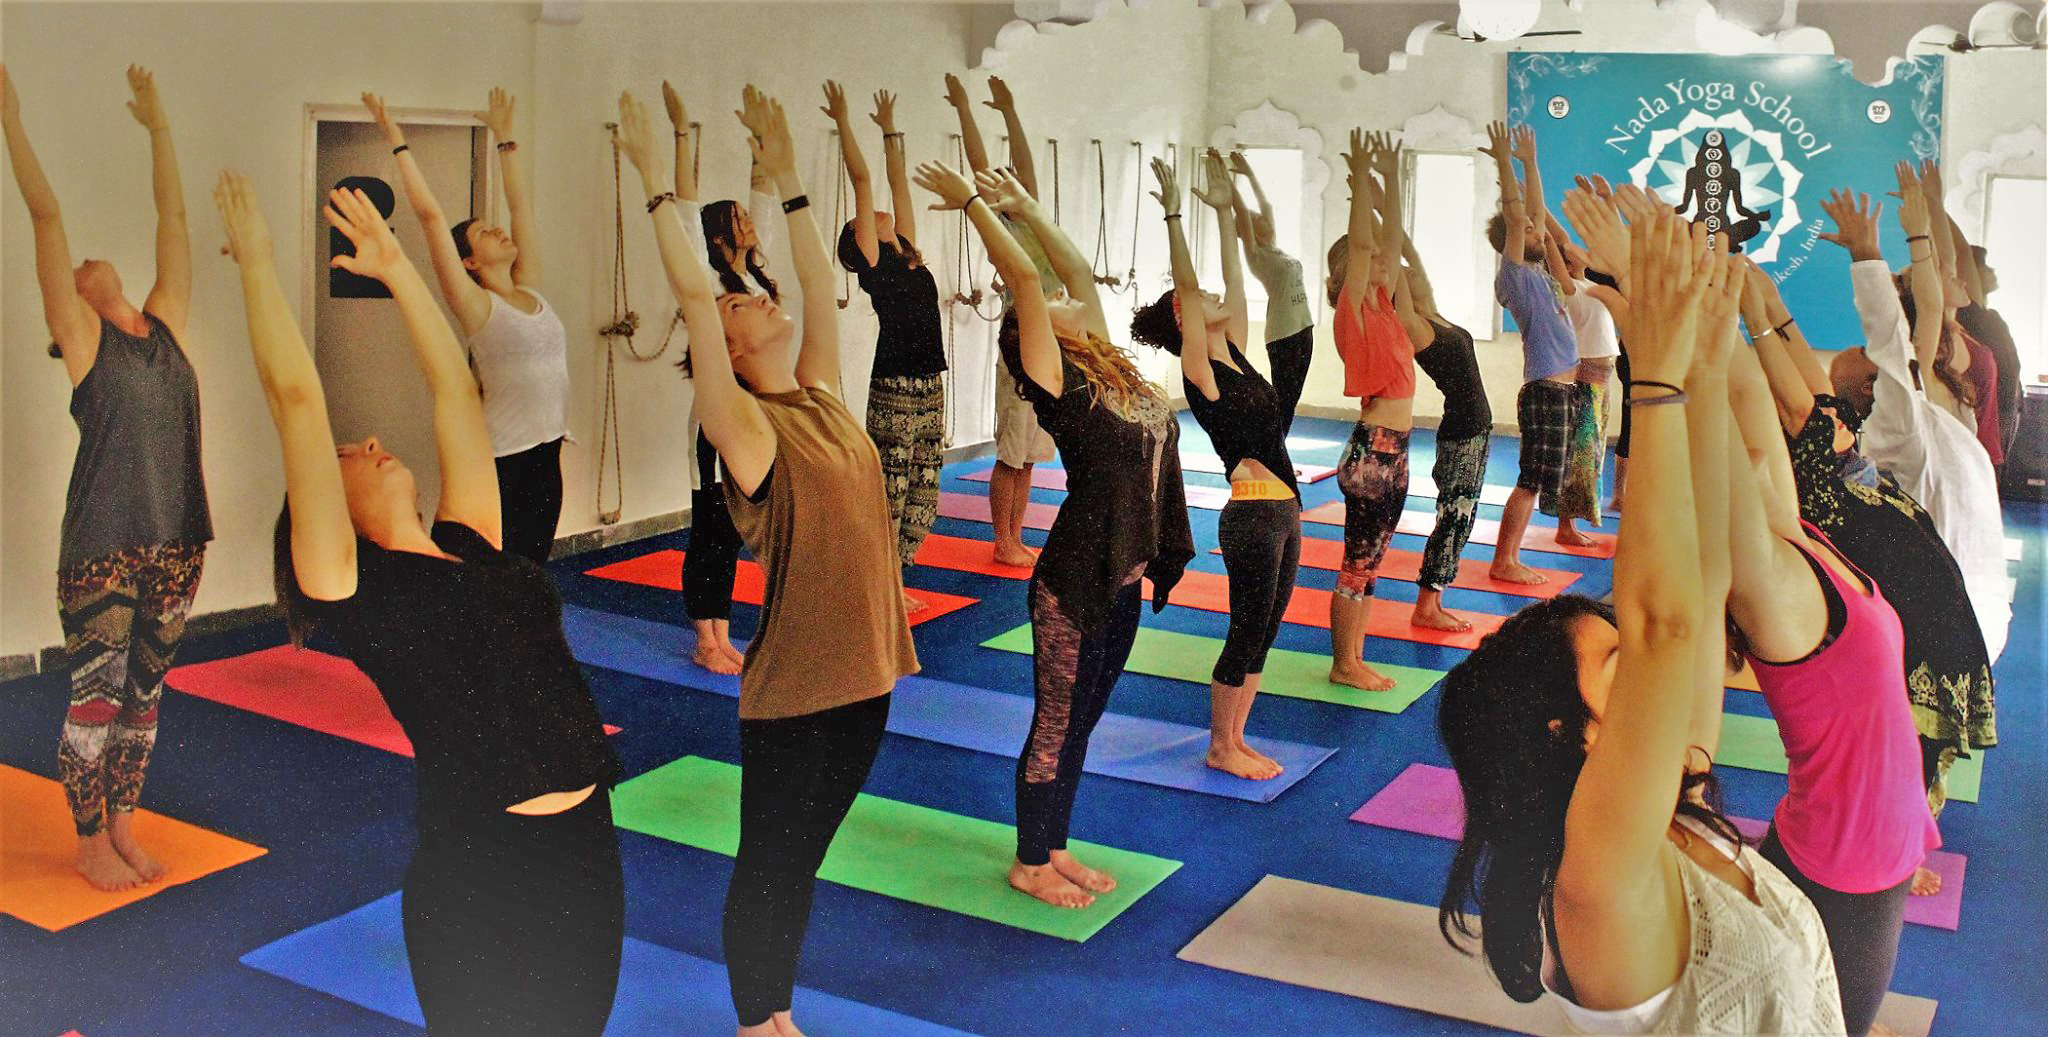 Iyengar Yoga Workshop in Rishikesh, India - Nada Yoga School